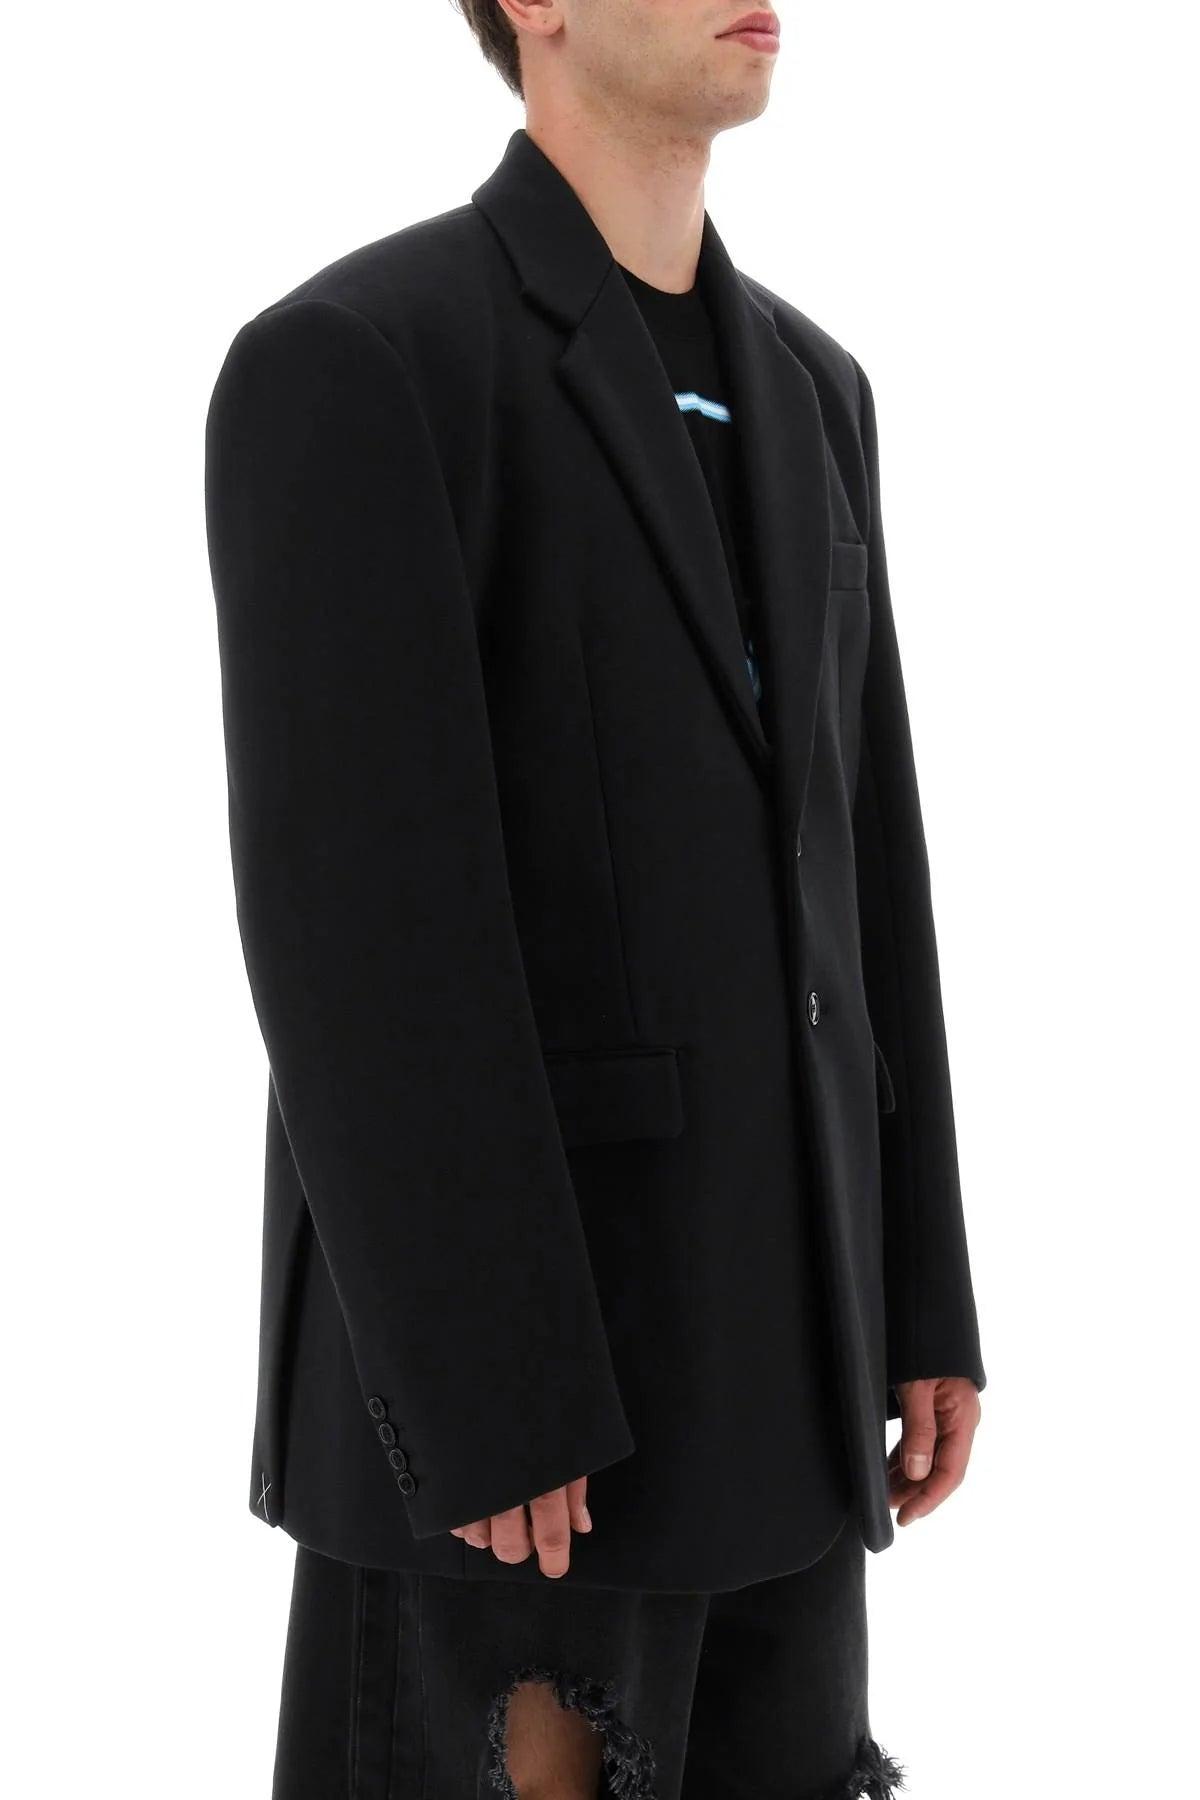 Vetements Oversized Jersey Jacket in Black for Men | Lyst